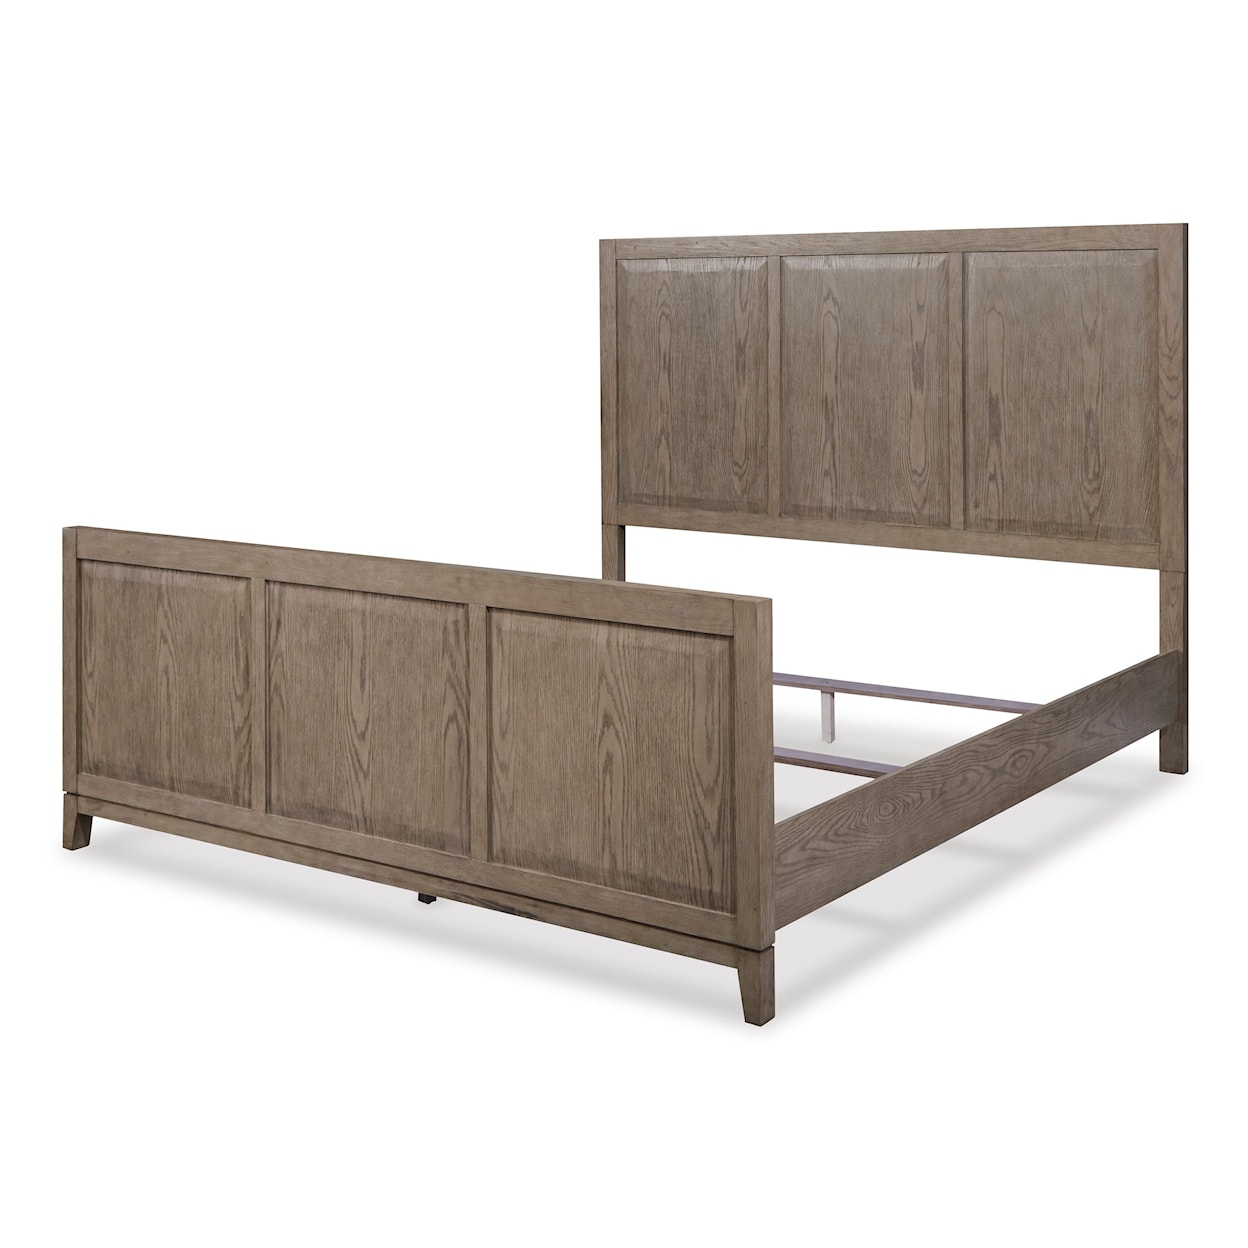 Ashley Furniture Signature Design Chrestner King Panel Bed